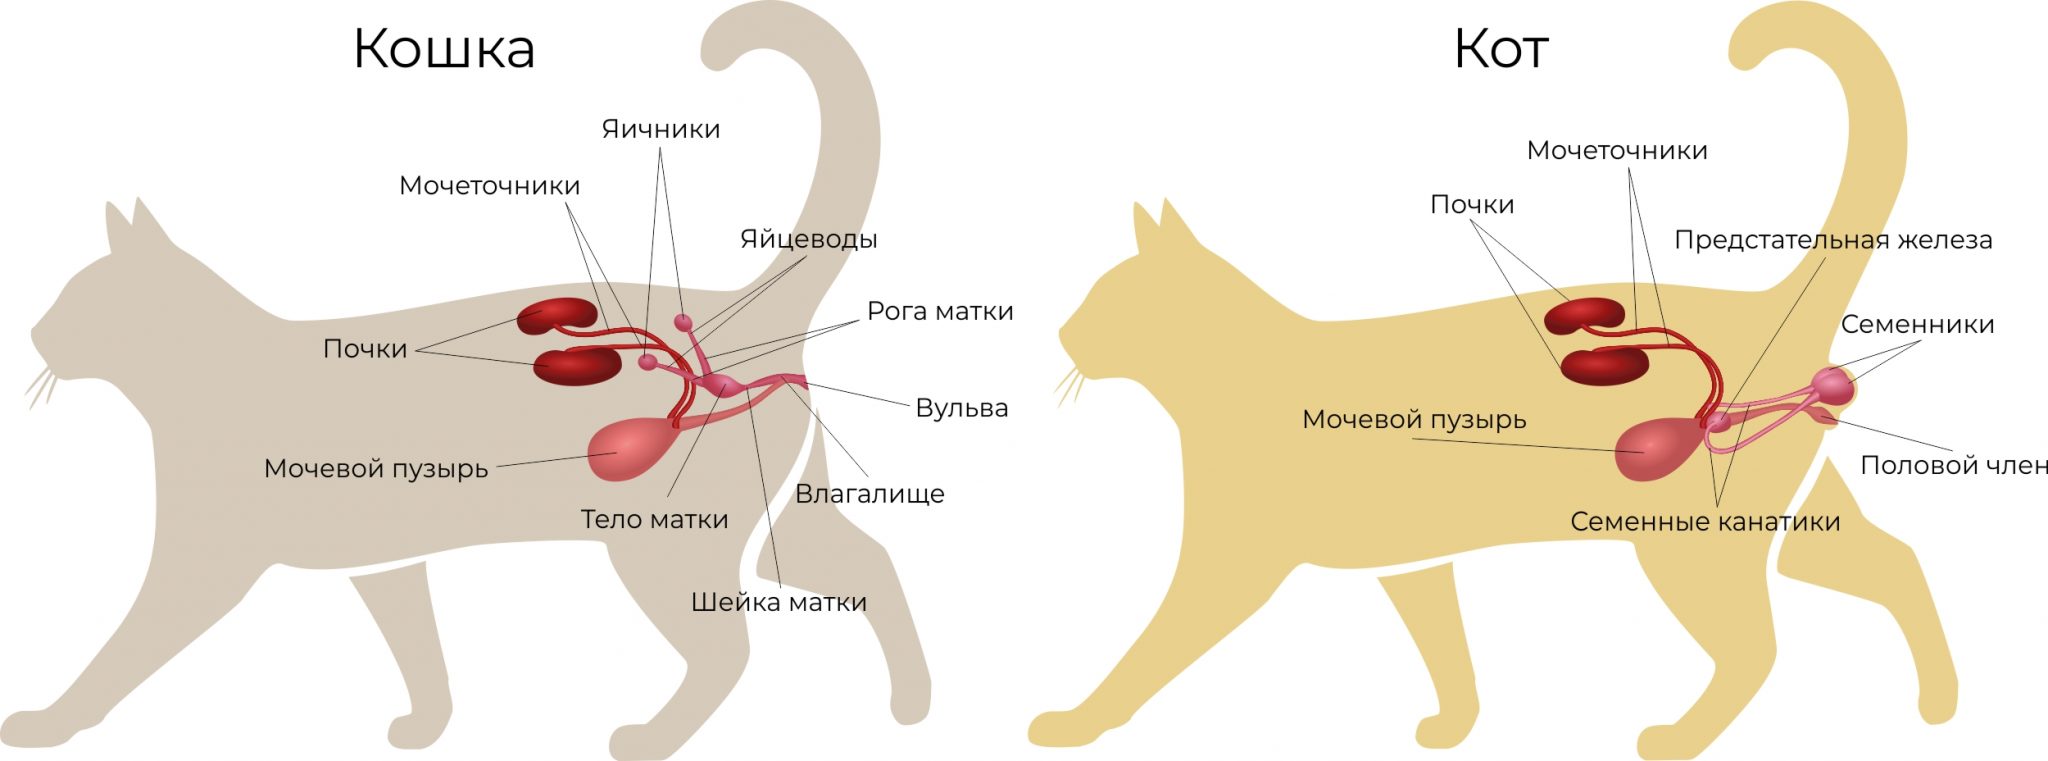 Стерилизация кошек: плюсы и минусы, уход после операции, советы ветеринара